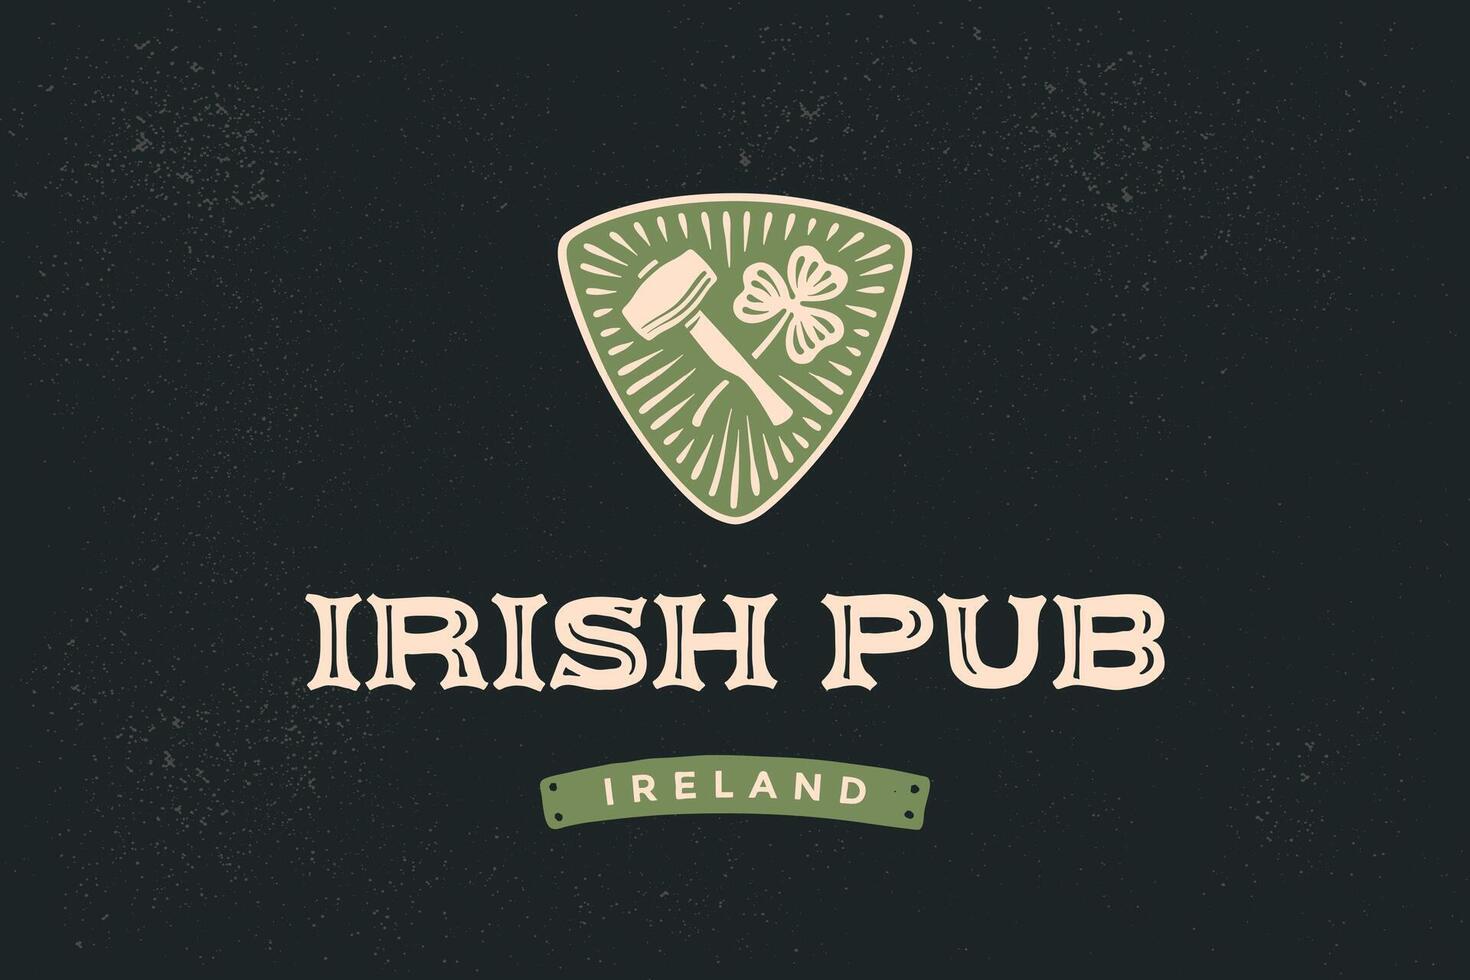 klassisk retro styled märka för irländsk pub vektor